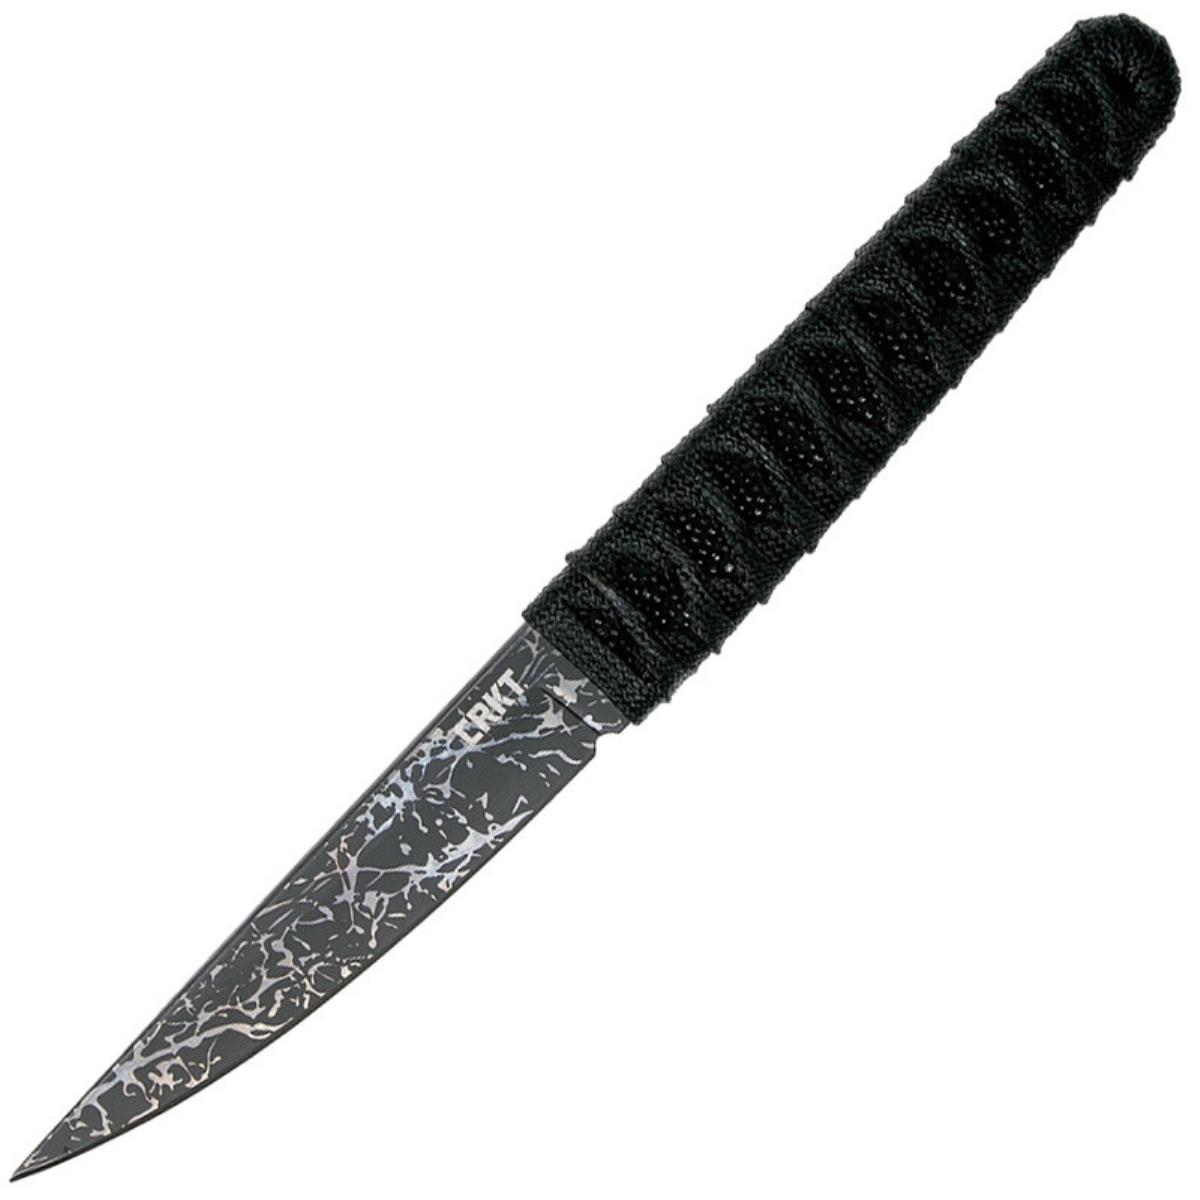 Нож Obake с фикс. клинком, рук-ть паракорд, клинок 8Cr14MoV, пластик. ножны  CRKT_2367 трость с клинком английское серебро